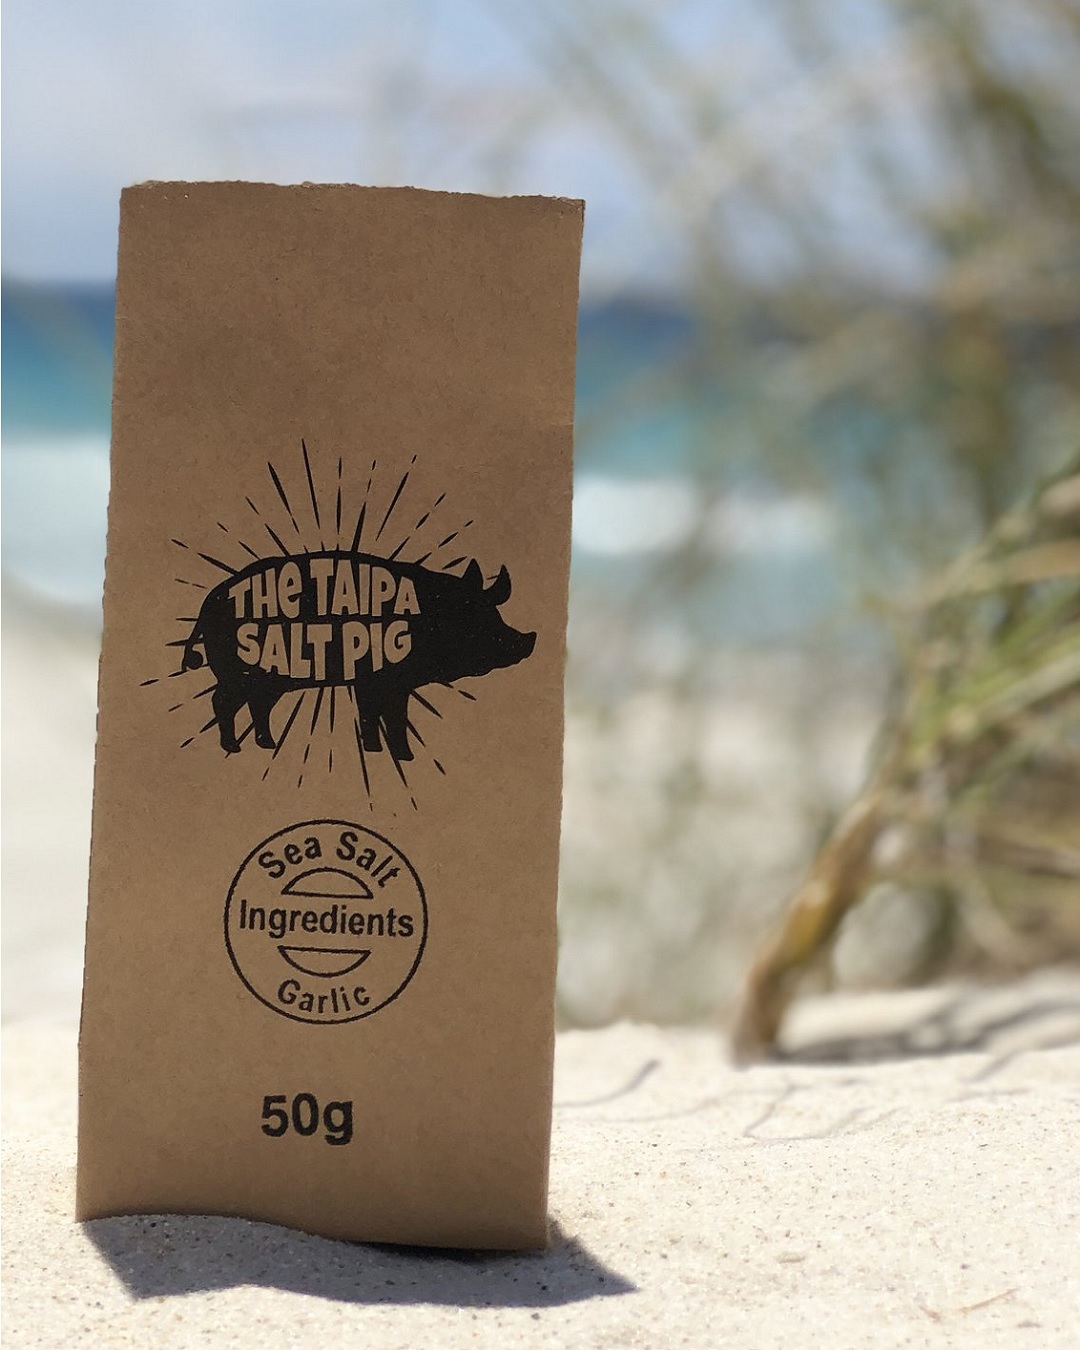 50g bag of Taipa pig garlic salt on sand on the beach